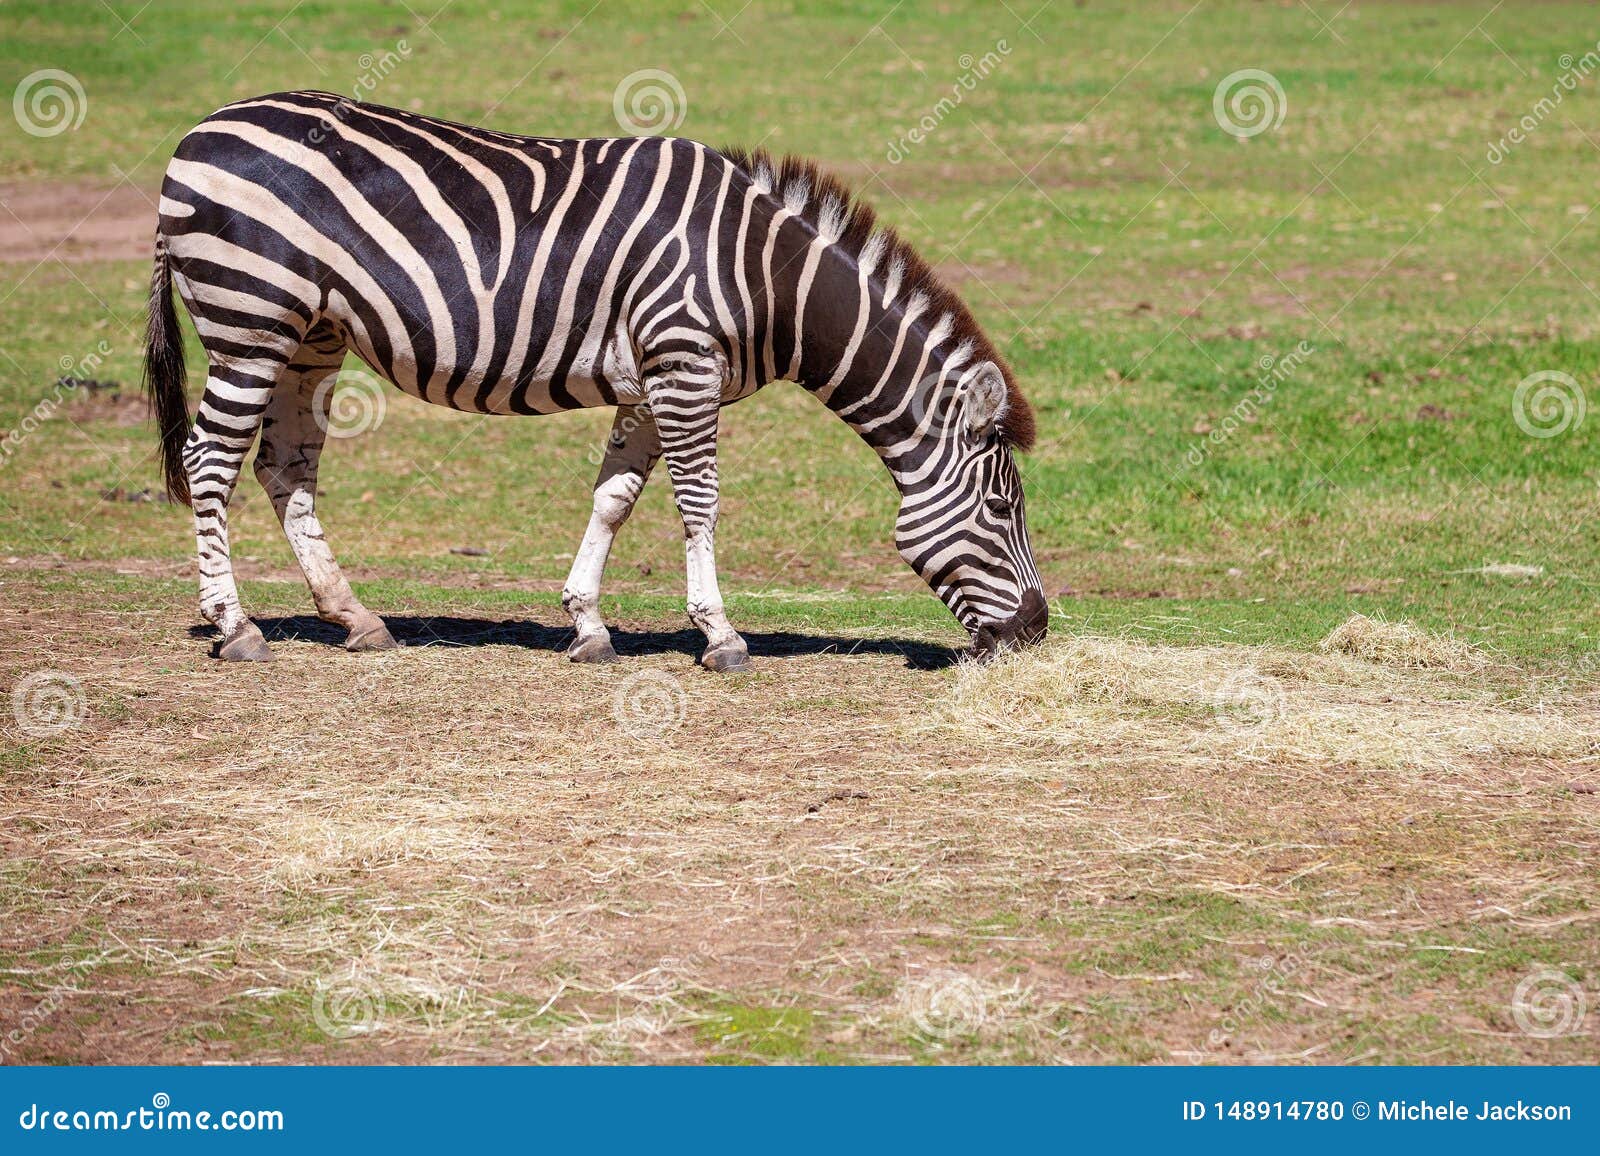 zebras stripes white black stripes or